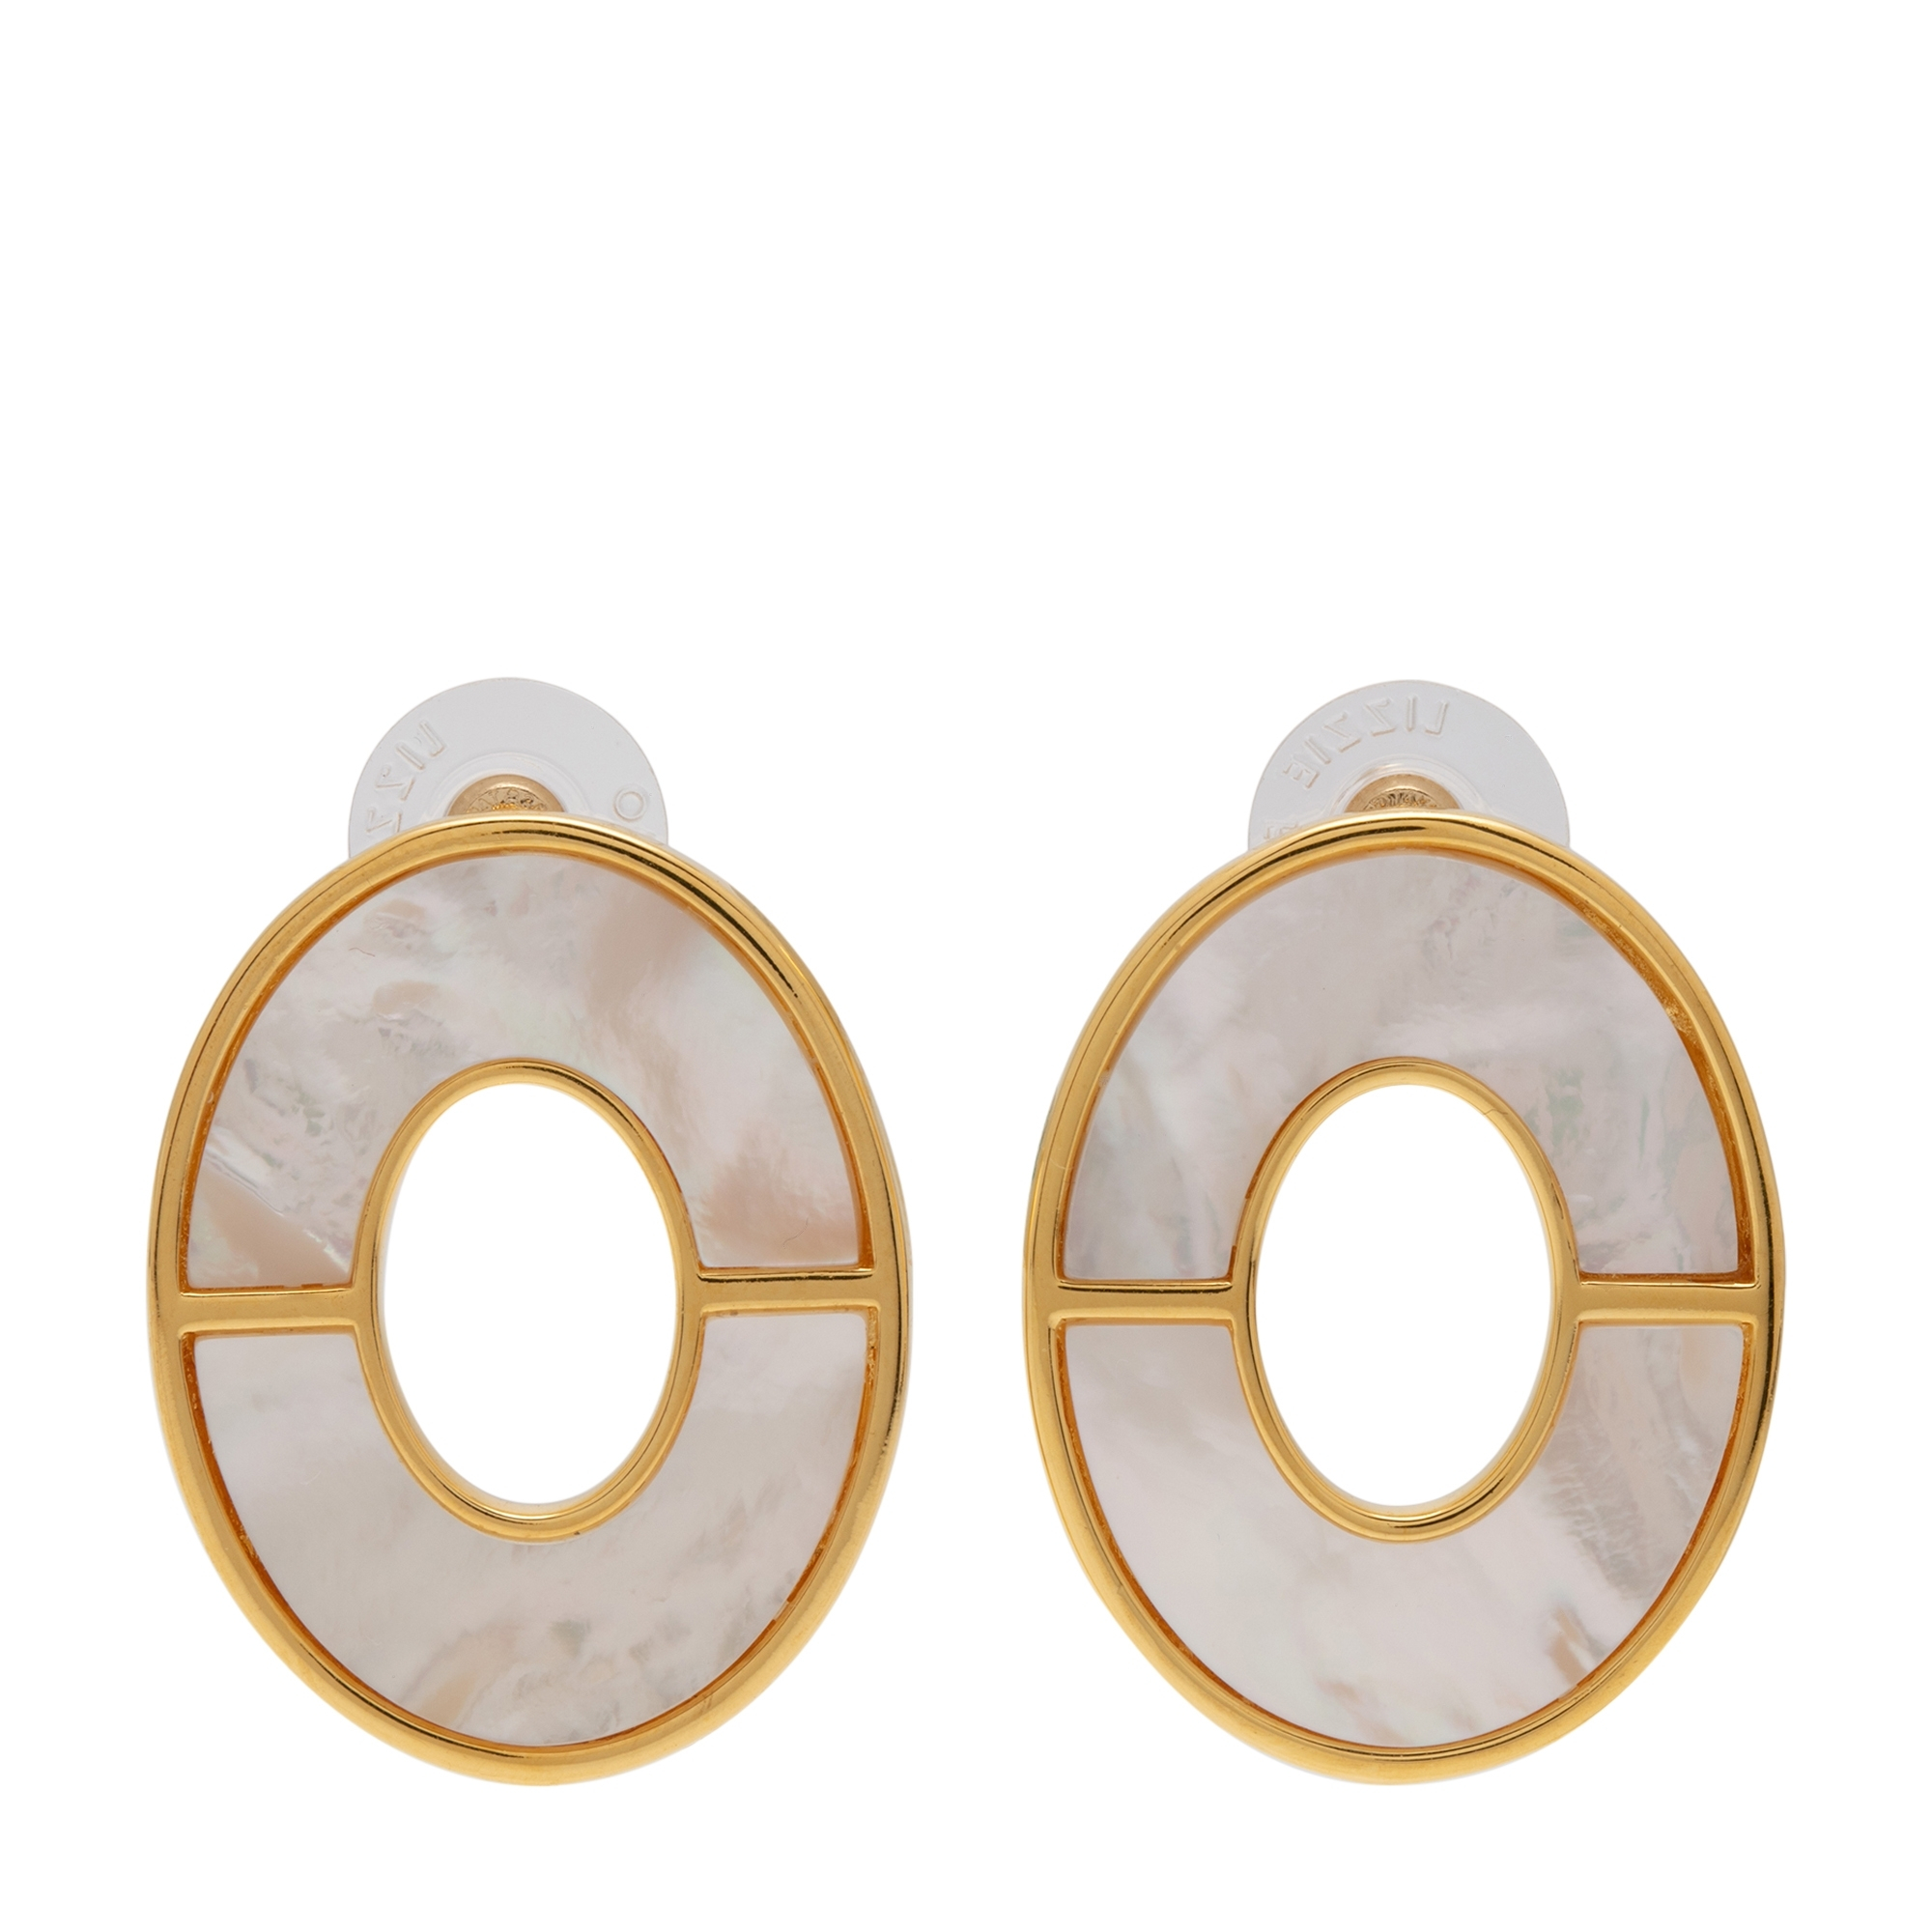 Symmetry earrings